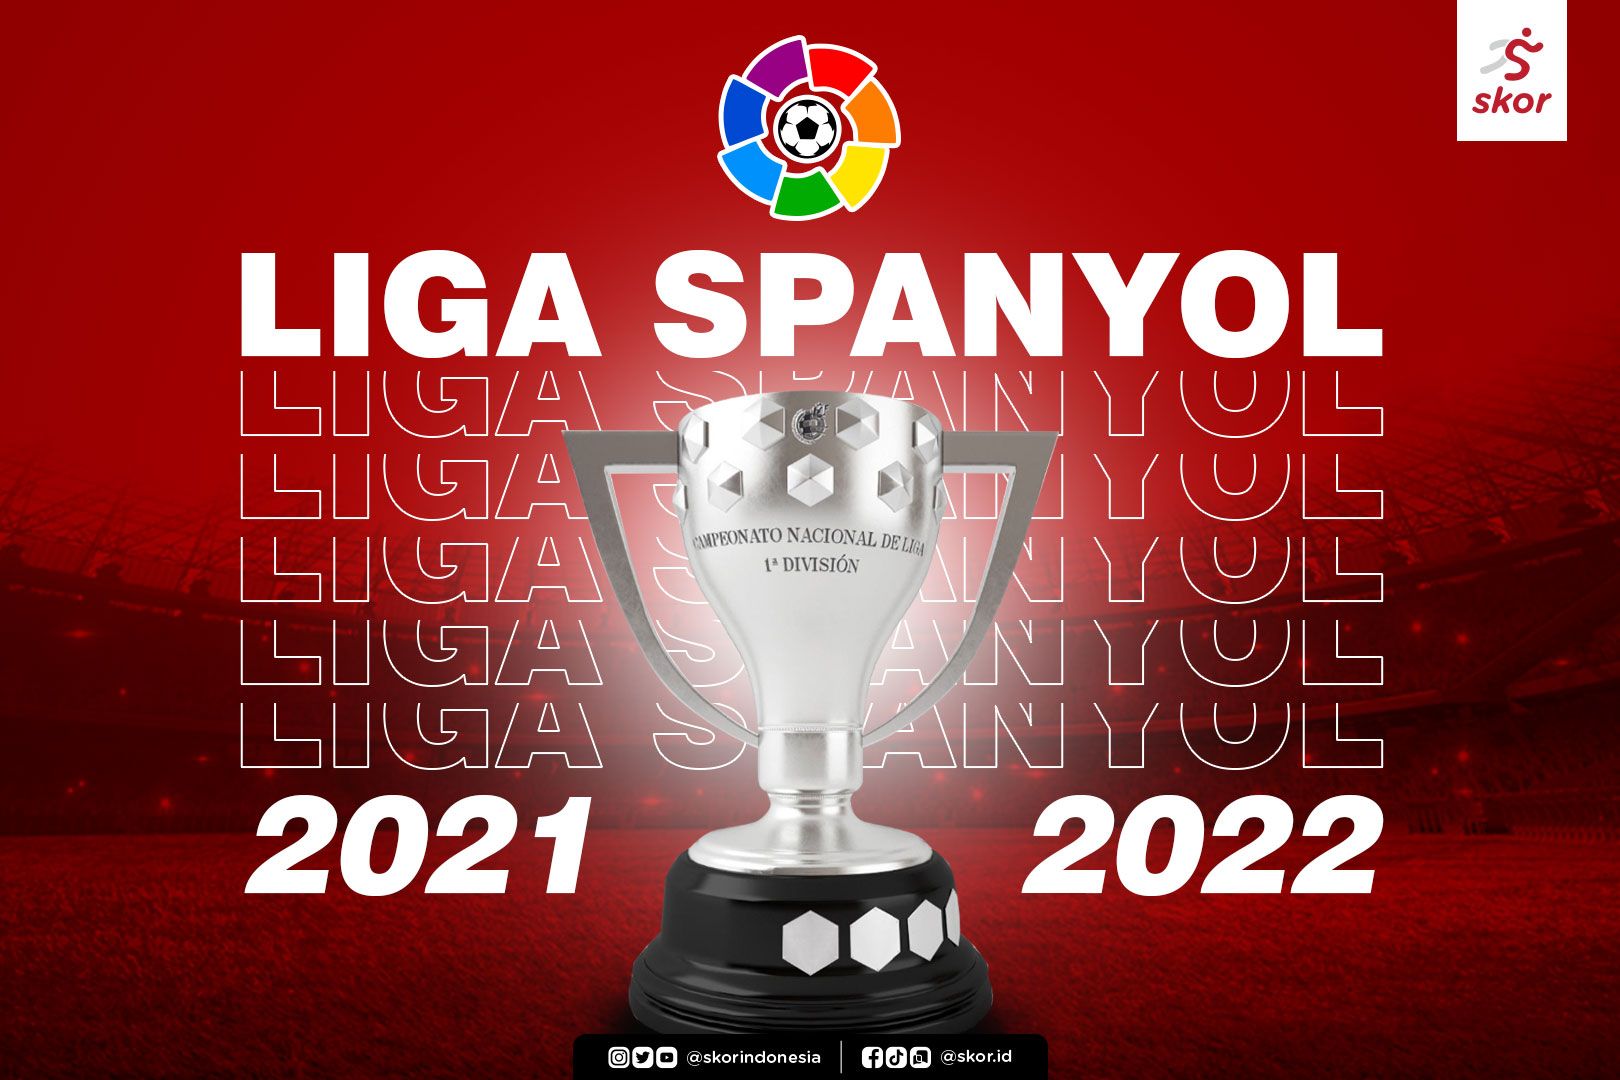 2022 jadwal liga spanyol Jadwal Lengkap